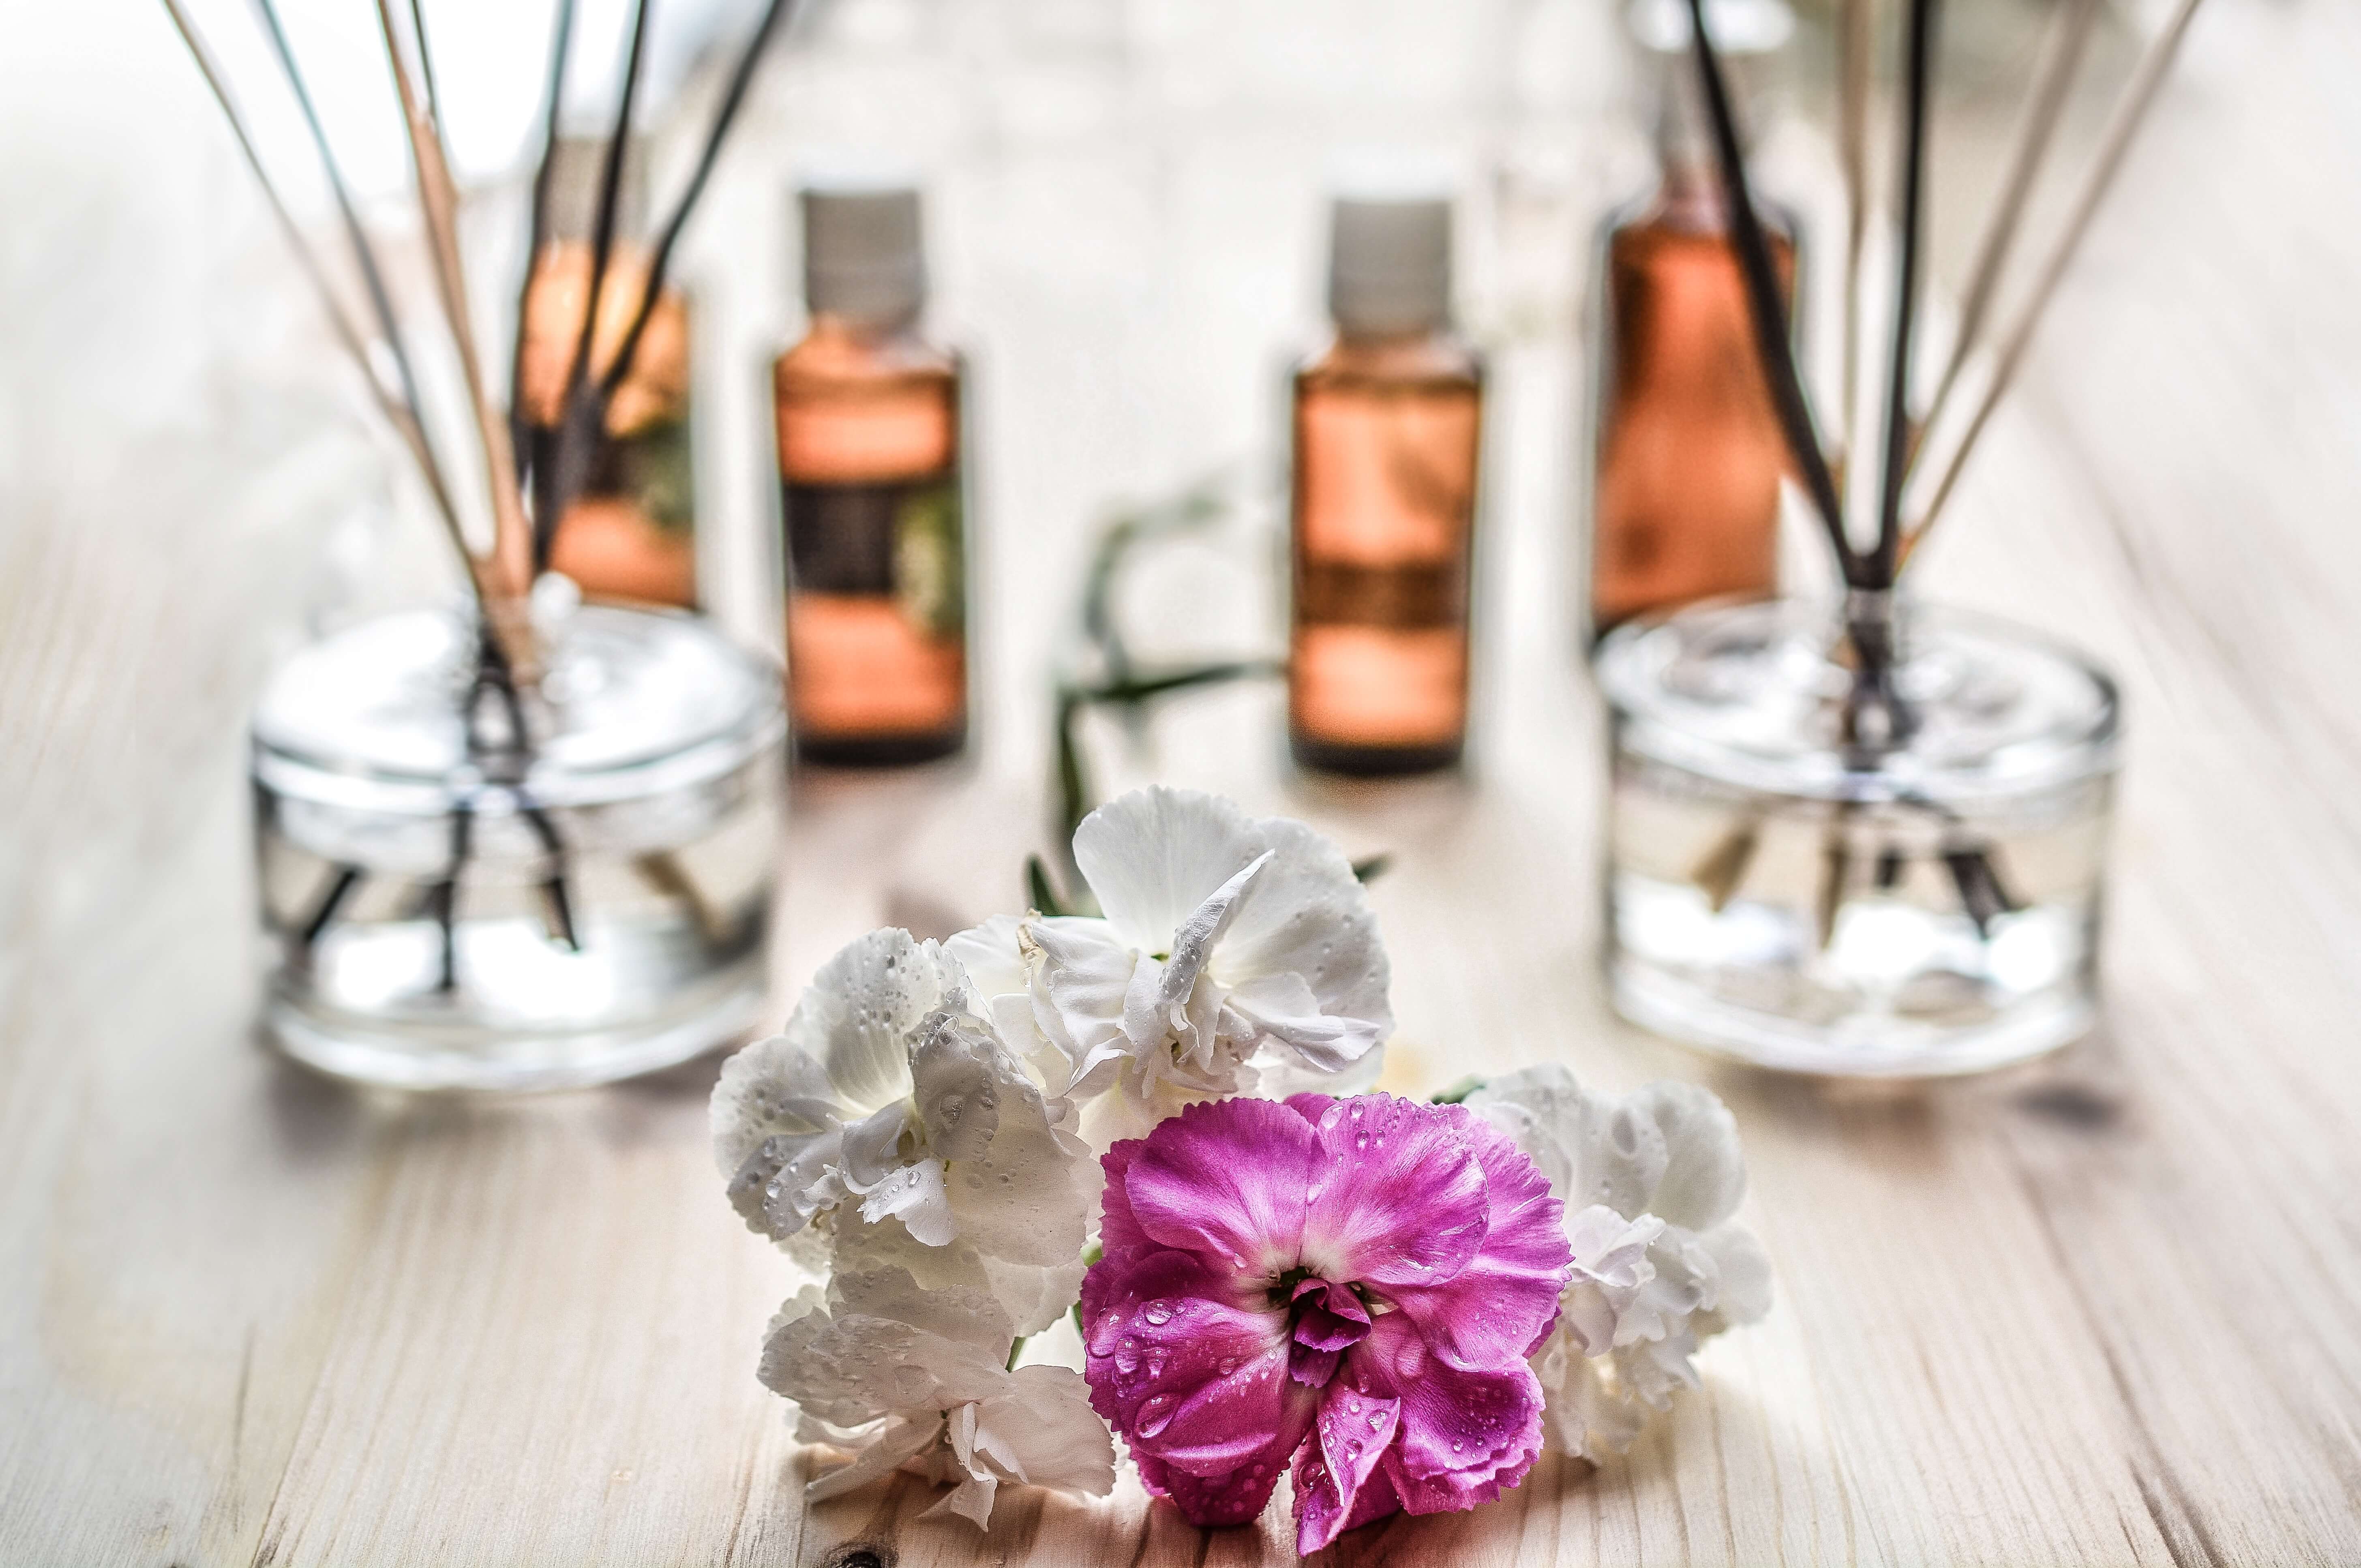 Eliminarea mirosurilor 1 betisoare parfumate